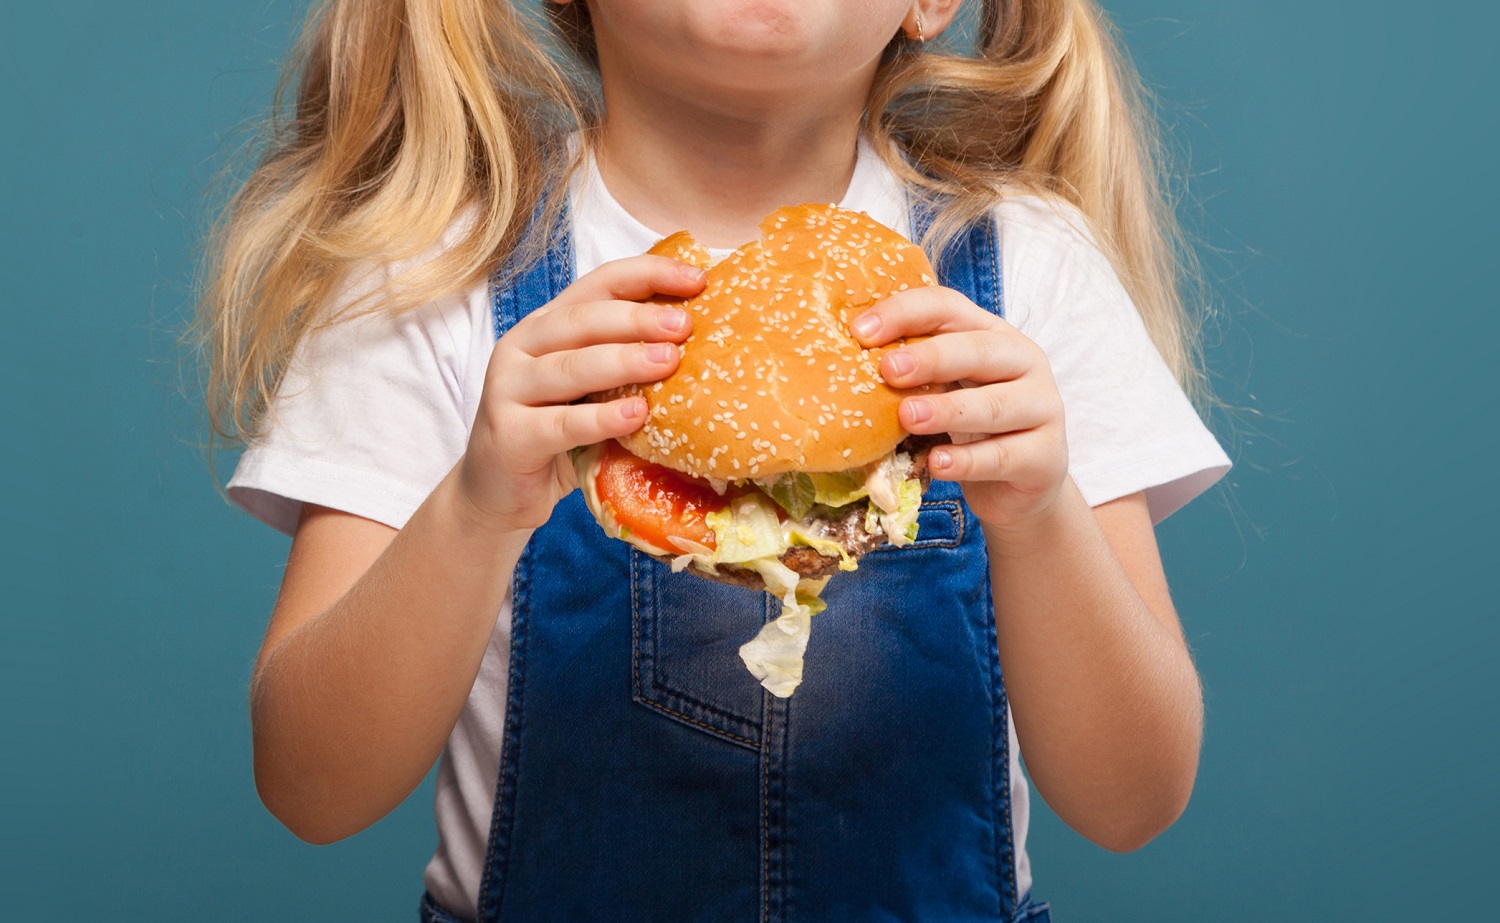 Mokslininkų tyrimas liūdina: sparčiai padaugėjo nutukusių vaikų